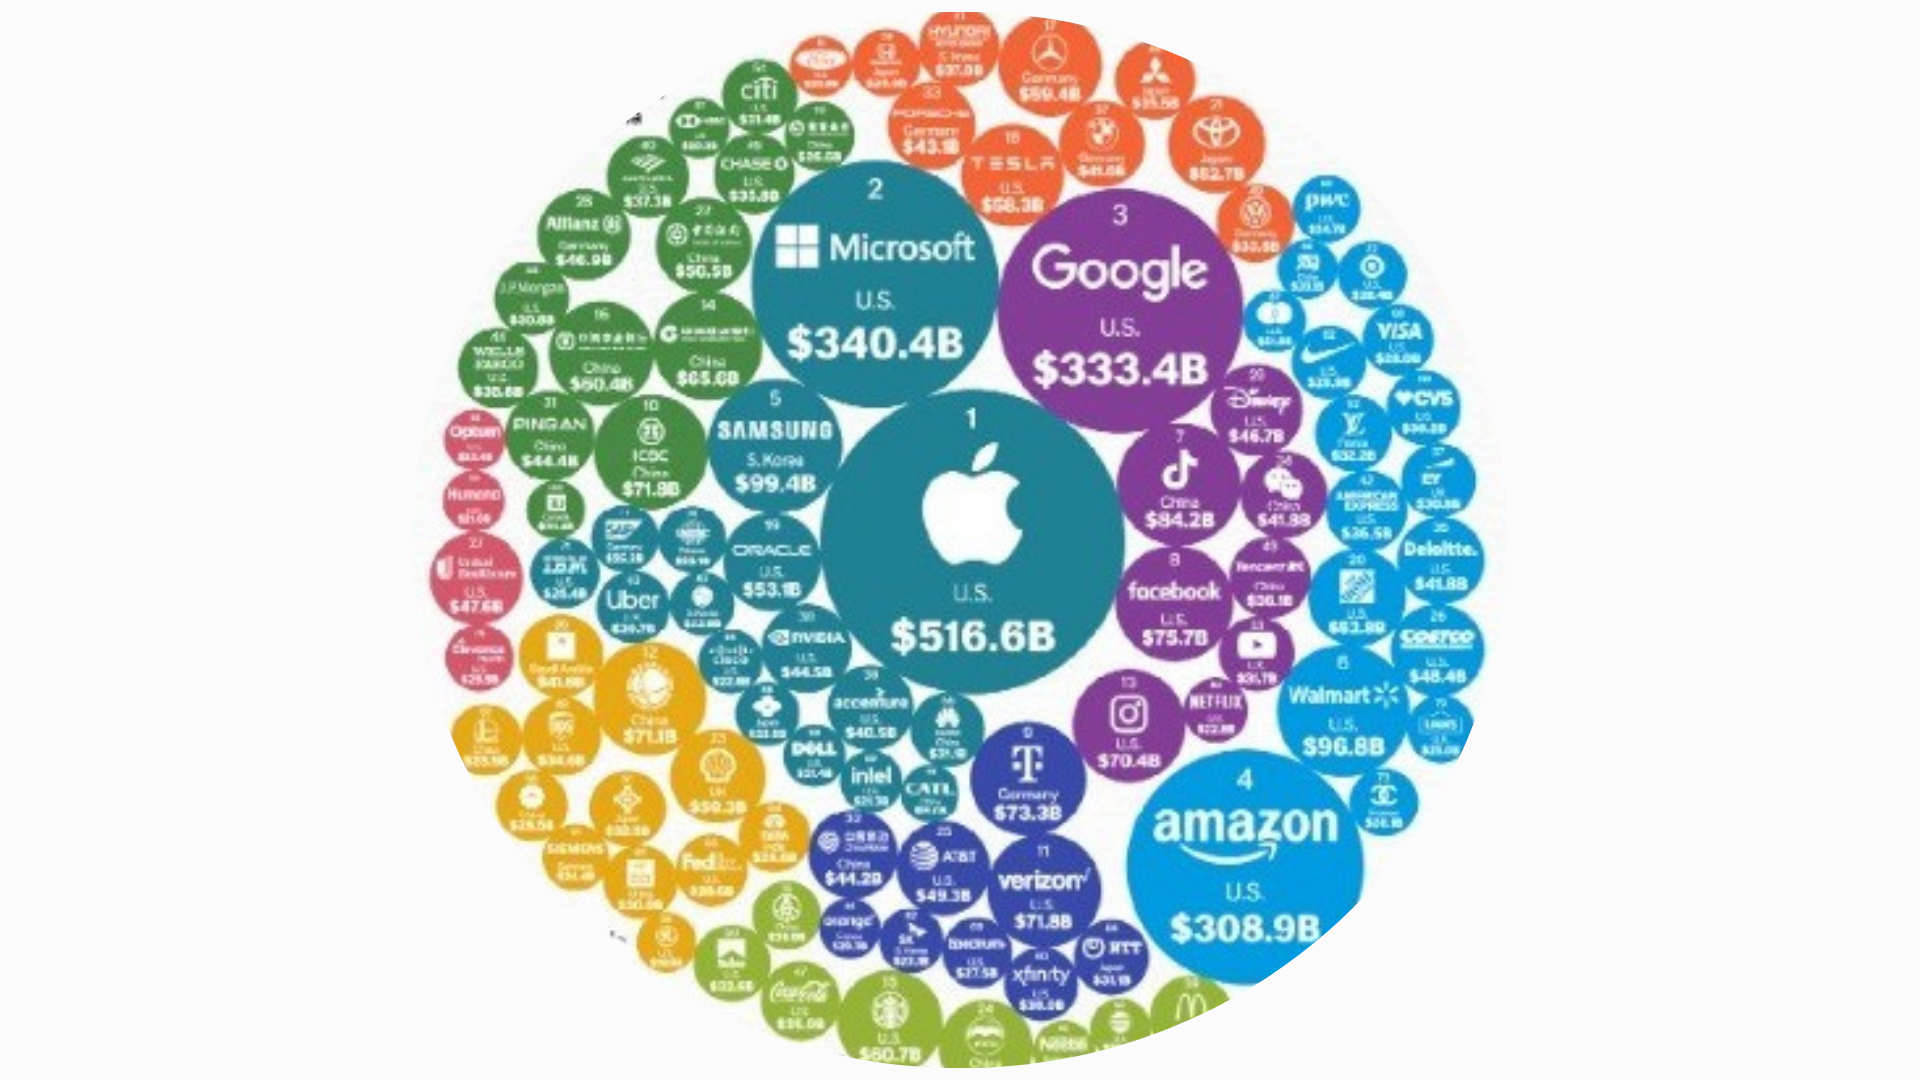 As marcas mais valiosas do mundo: gigantes da tecnologia dominam, mas novos entrantes surgem